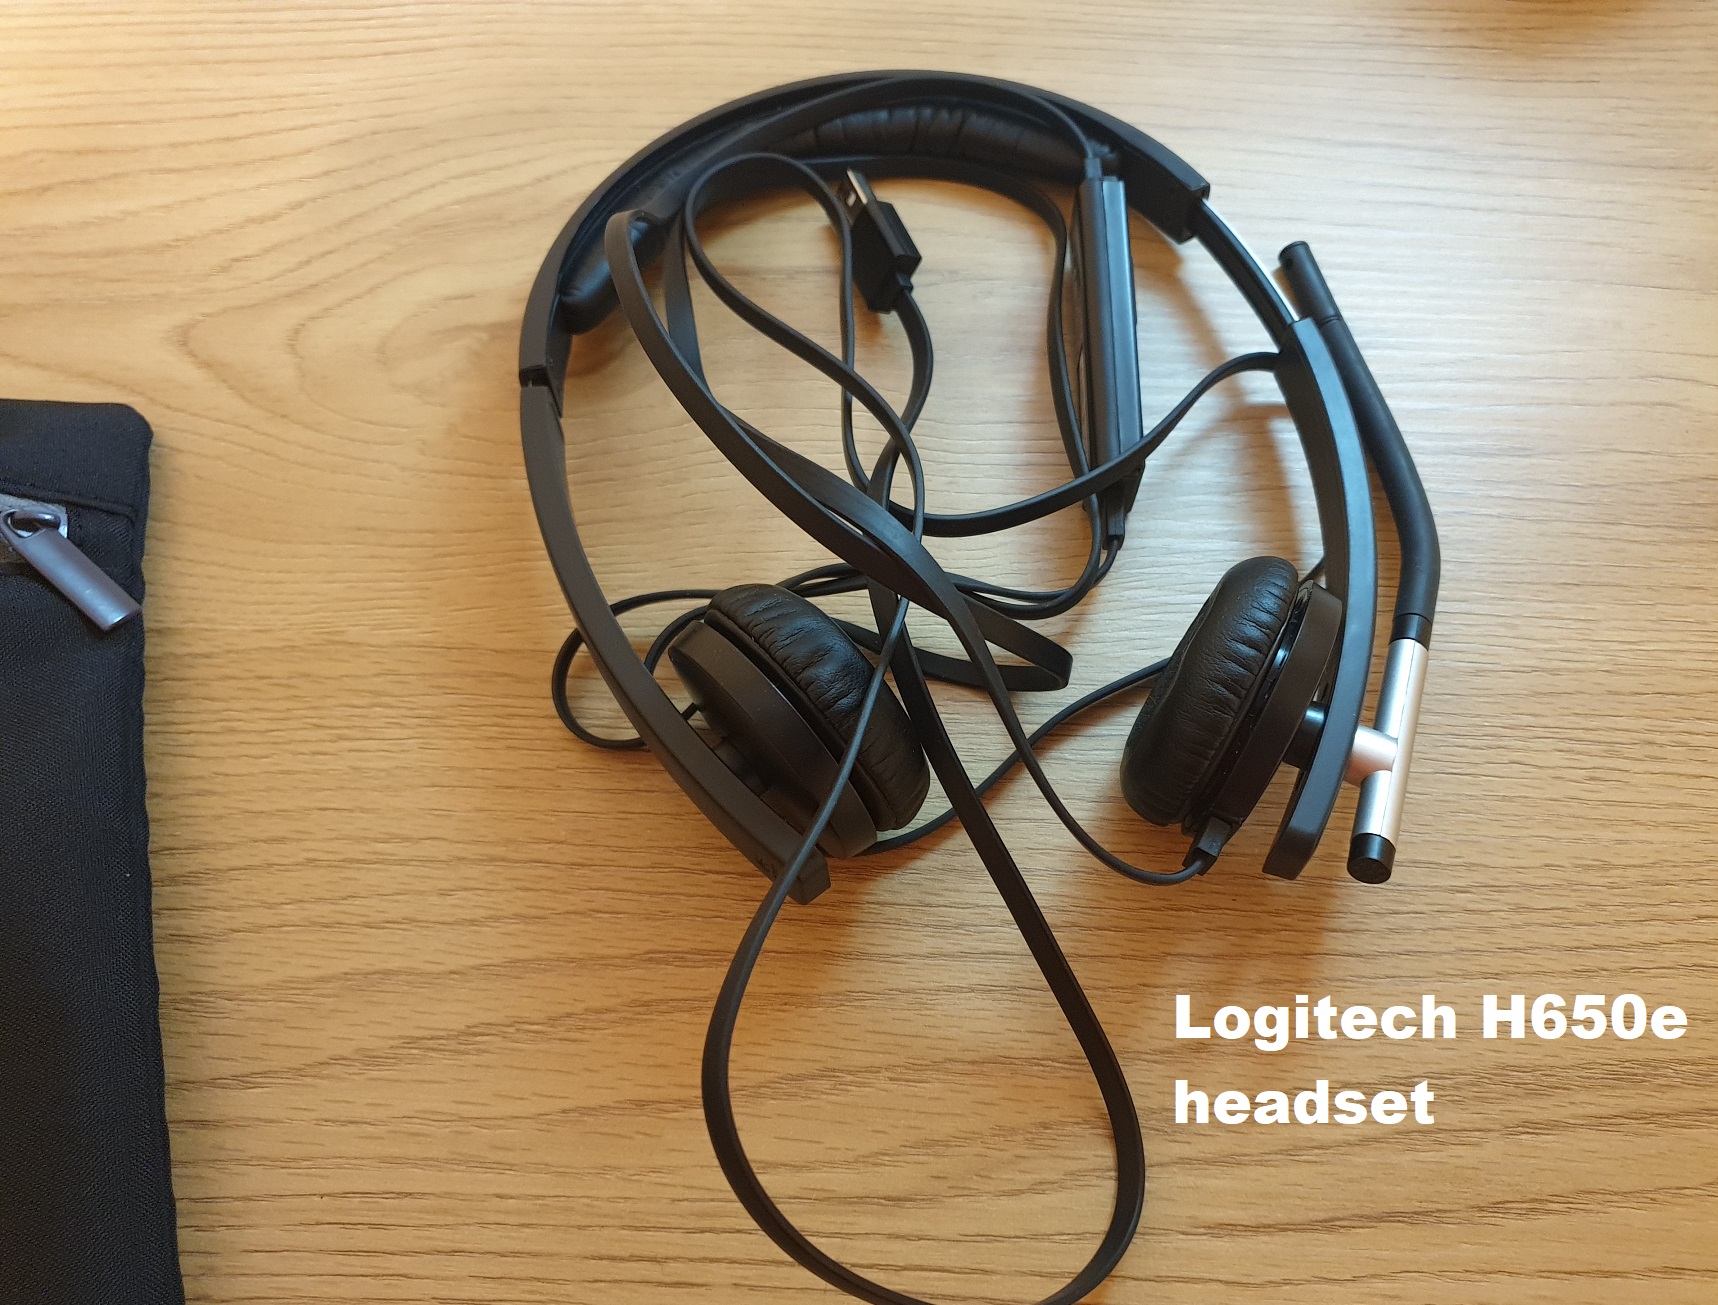 Logitech H650e headset